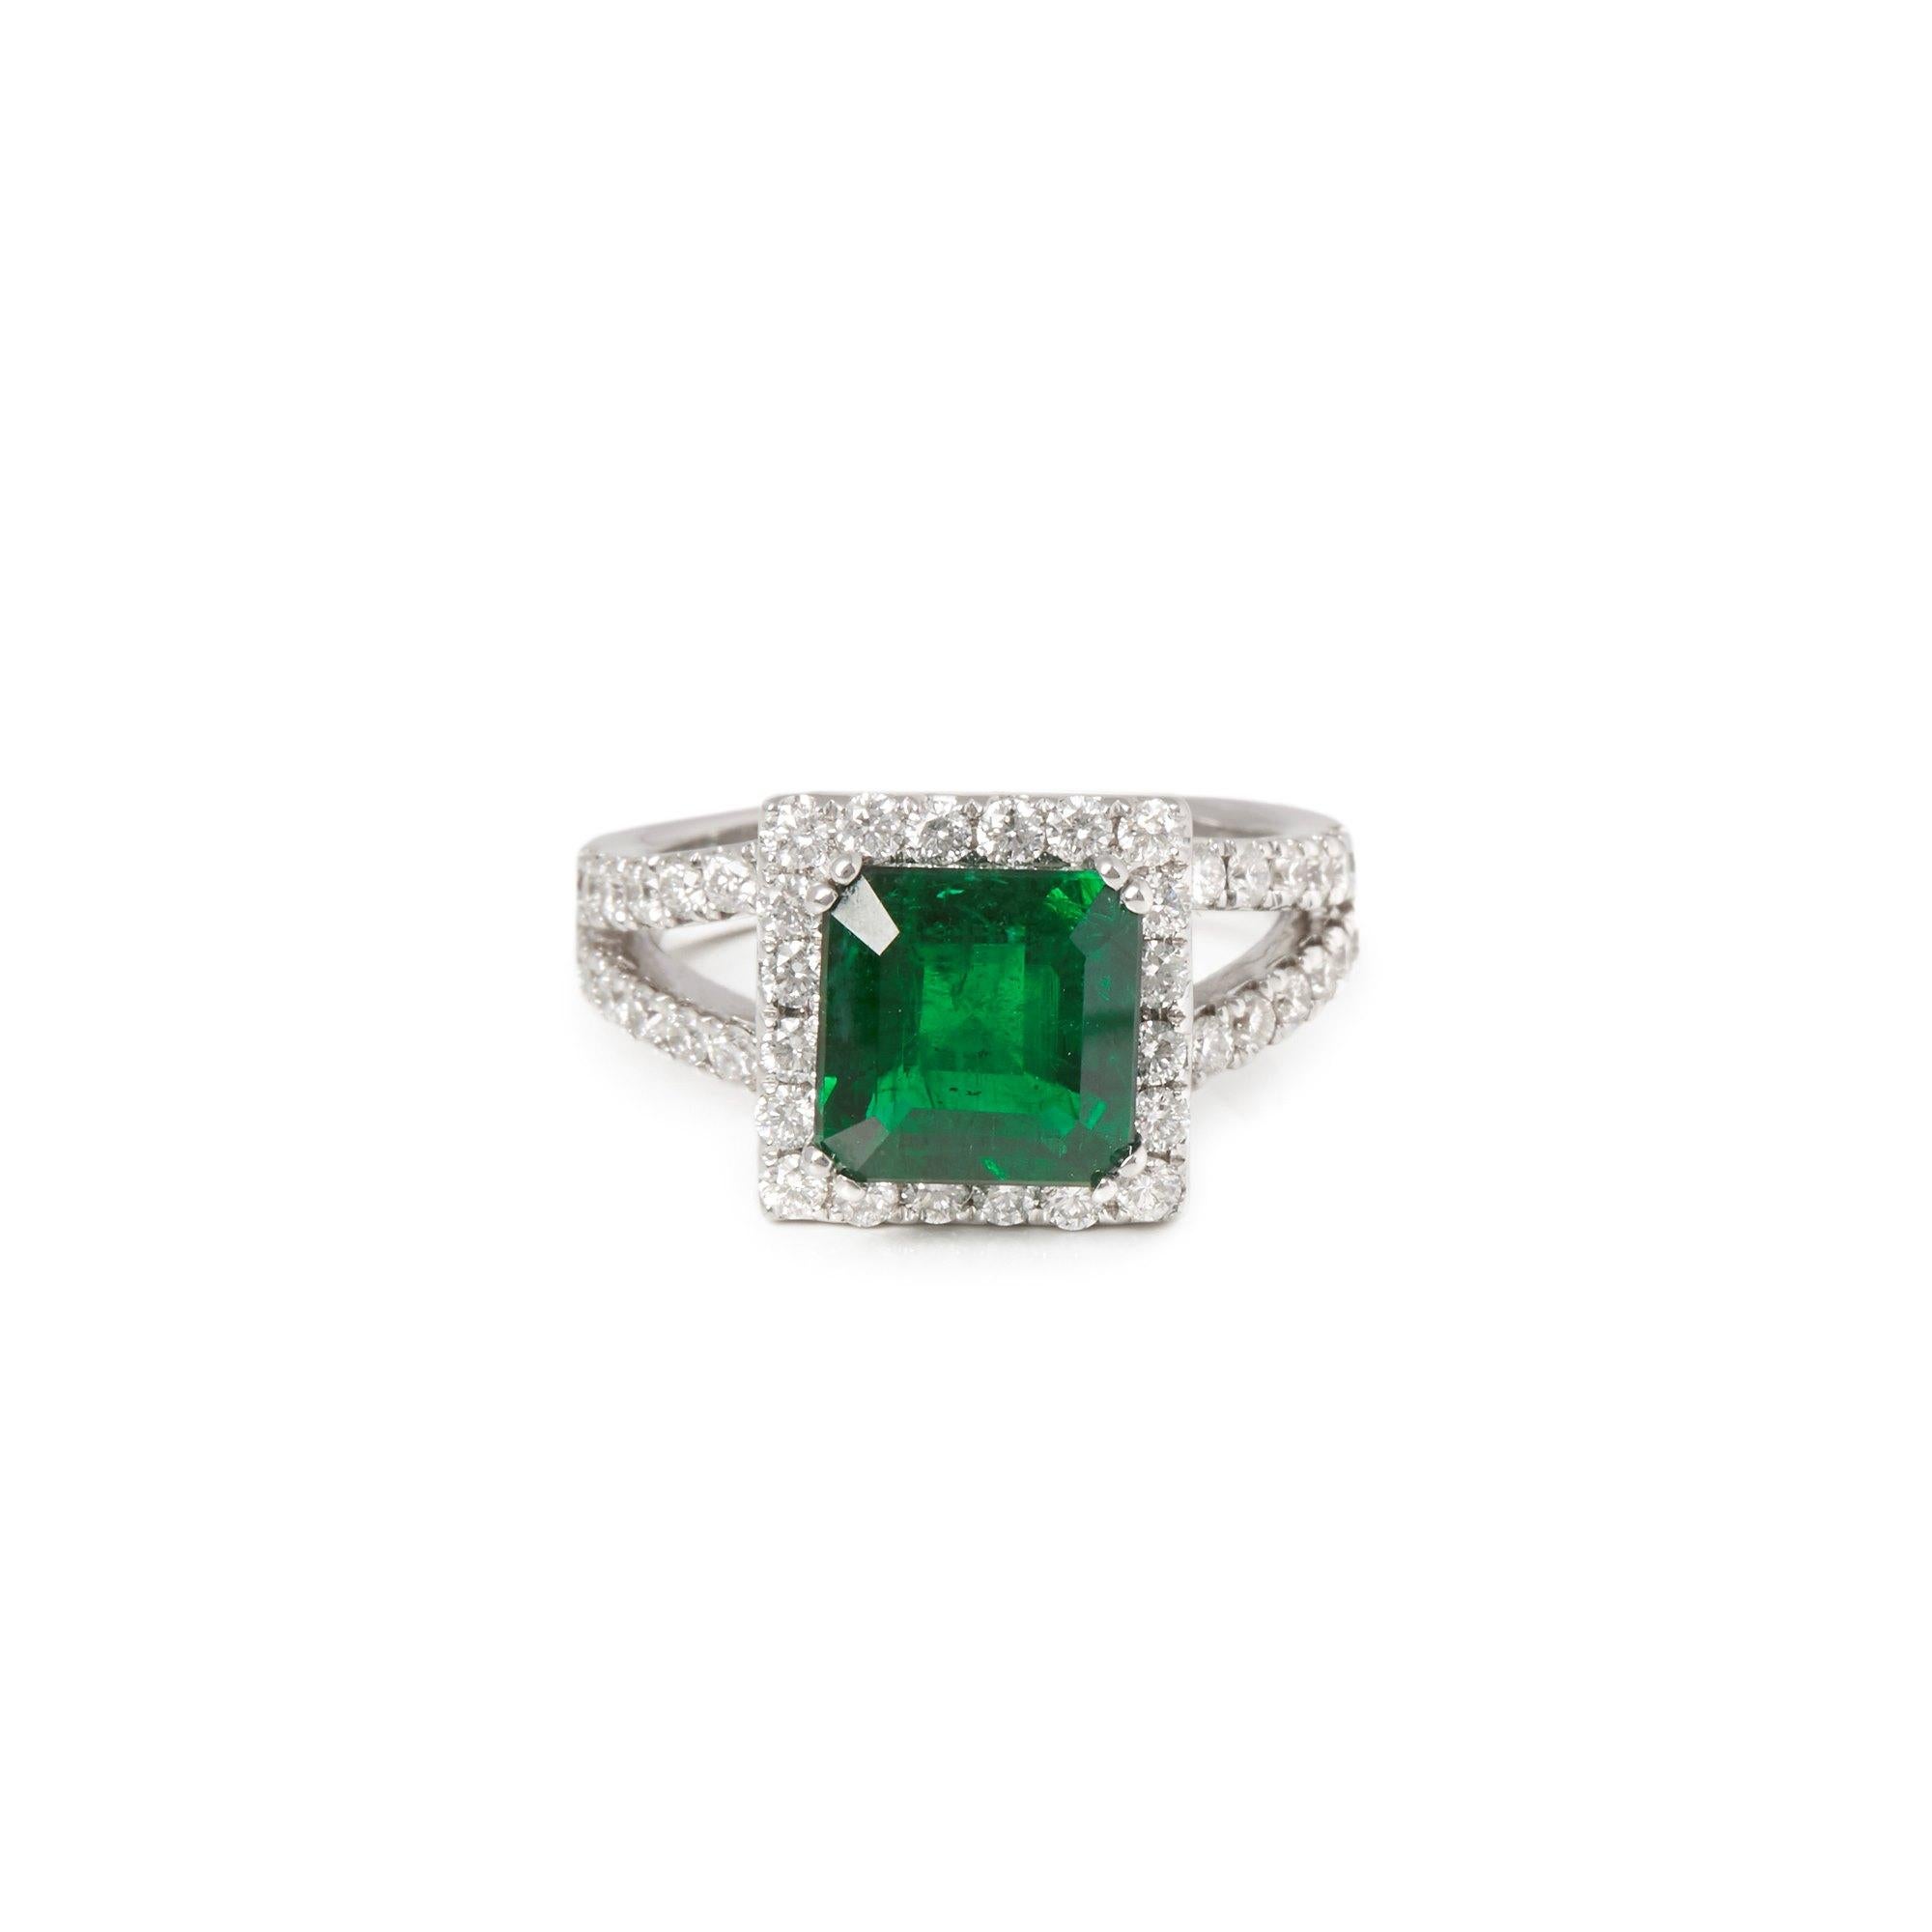 Dieser von David Jerome entworfene Ring stammt aus seiner Privatsammlung und enthält einen Smaragd im Quadratschliff mit insgesamt 4,60 Karat. Mit runden Diamanten im Brillantschliff von insgesamt 1,28 Karat in einer Fassung aus 18 Karat Weißgold.